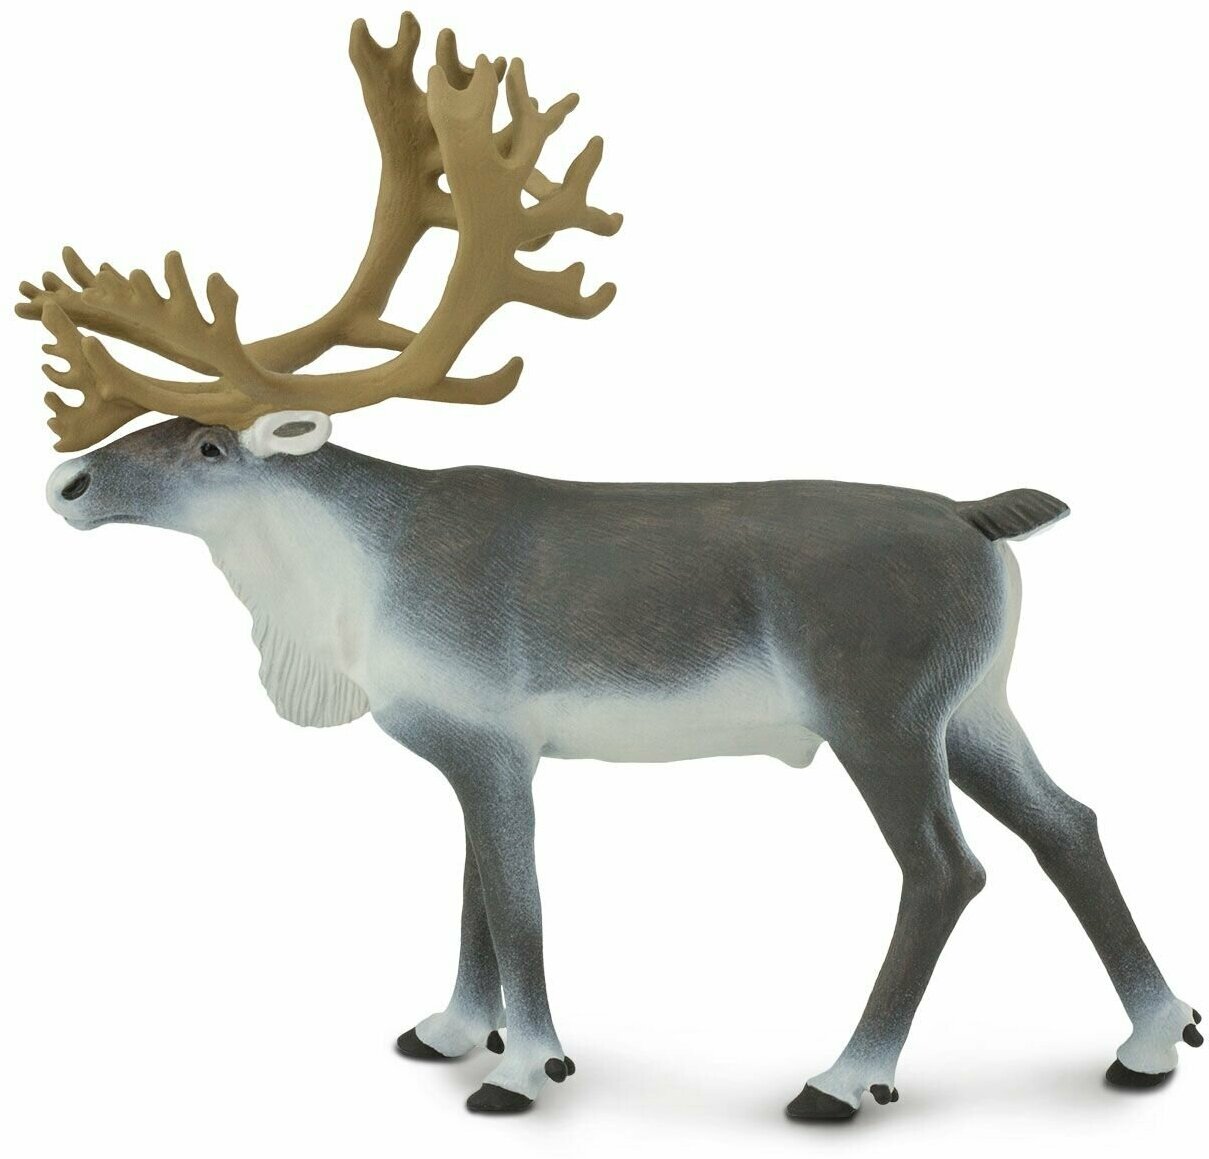 Фигурка животного Safari Ltd Северный олень, для детей, игрушка коллекционная, 182229